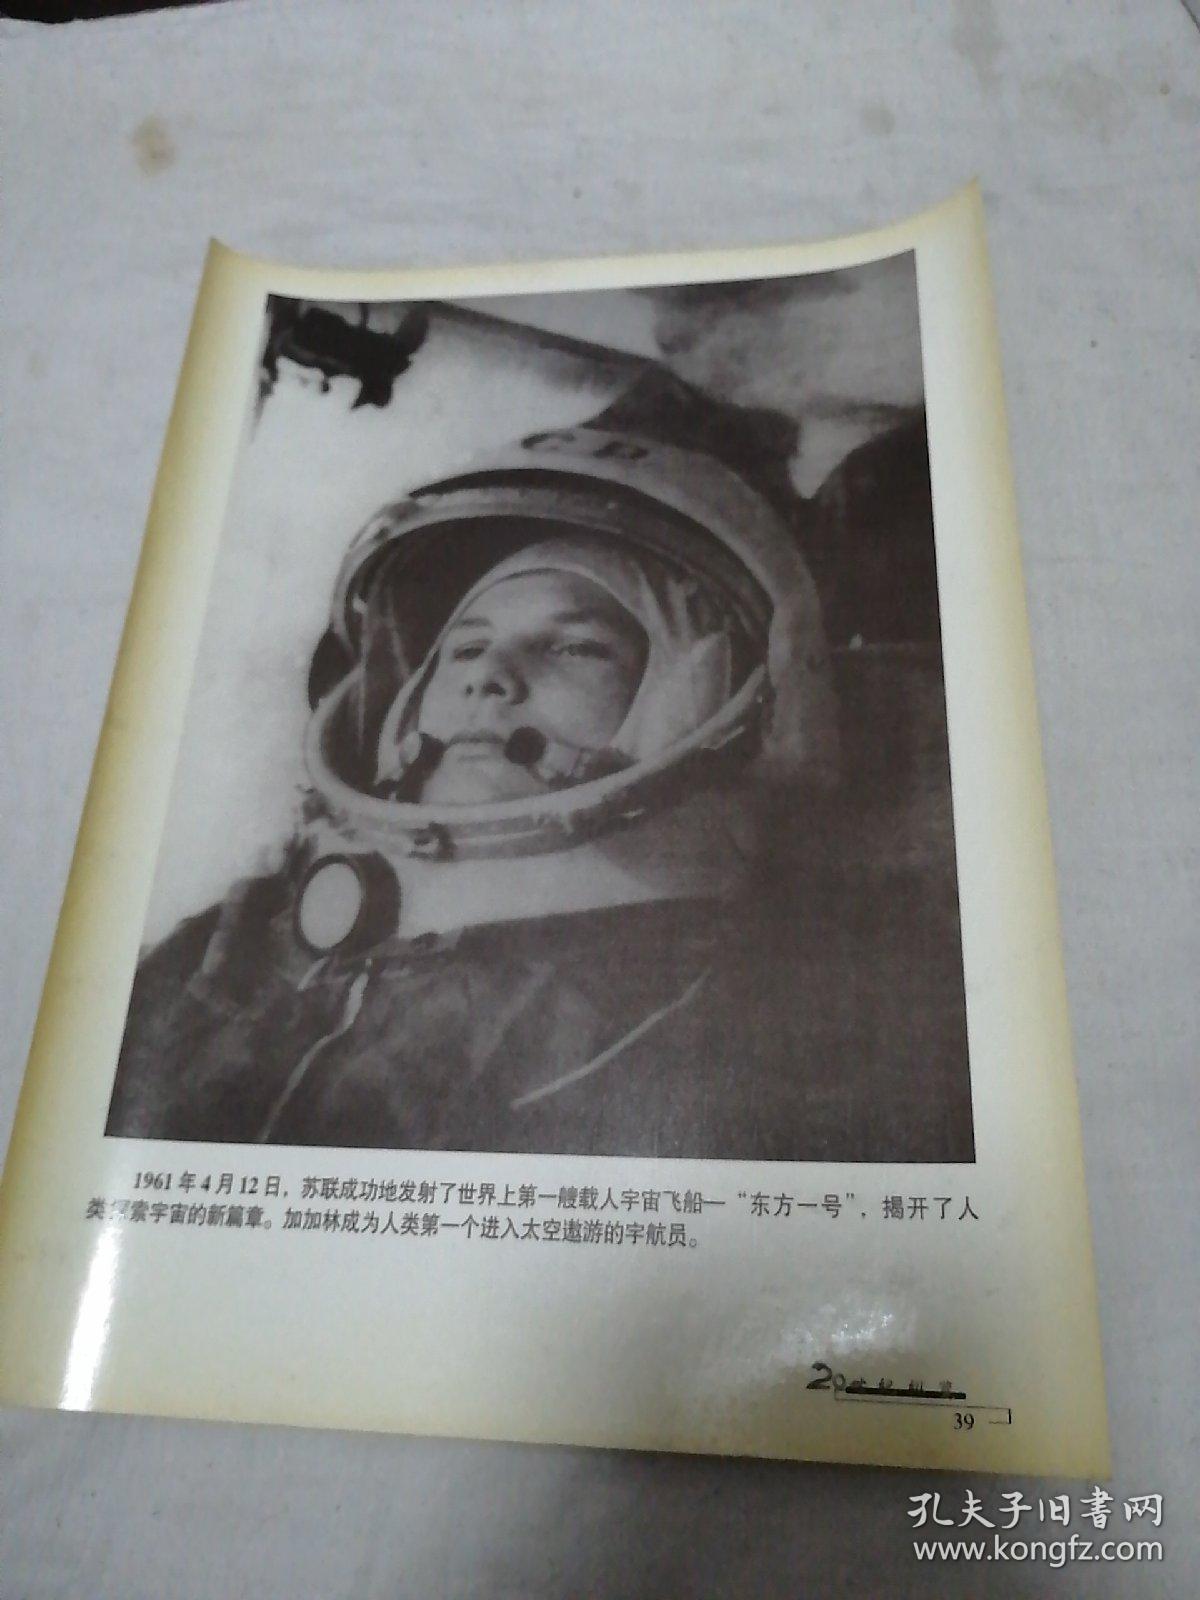 老照片：1961年苏联成功发射世界上第一艘载人宇宙飞船“东方红一号“（图为加加林）